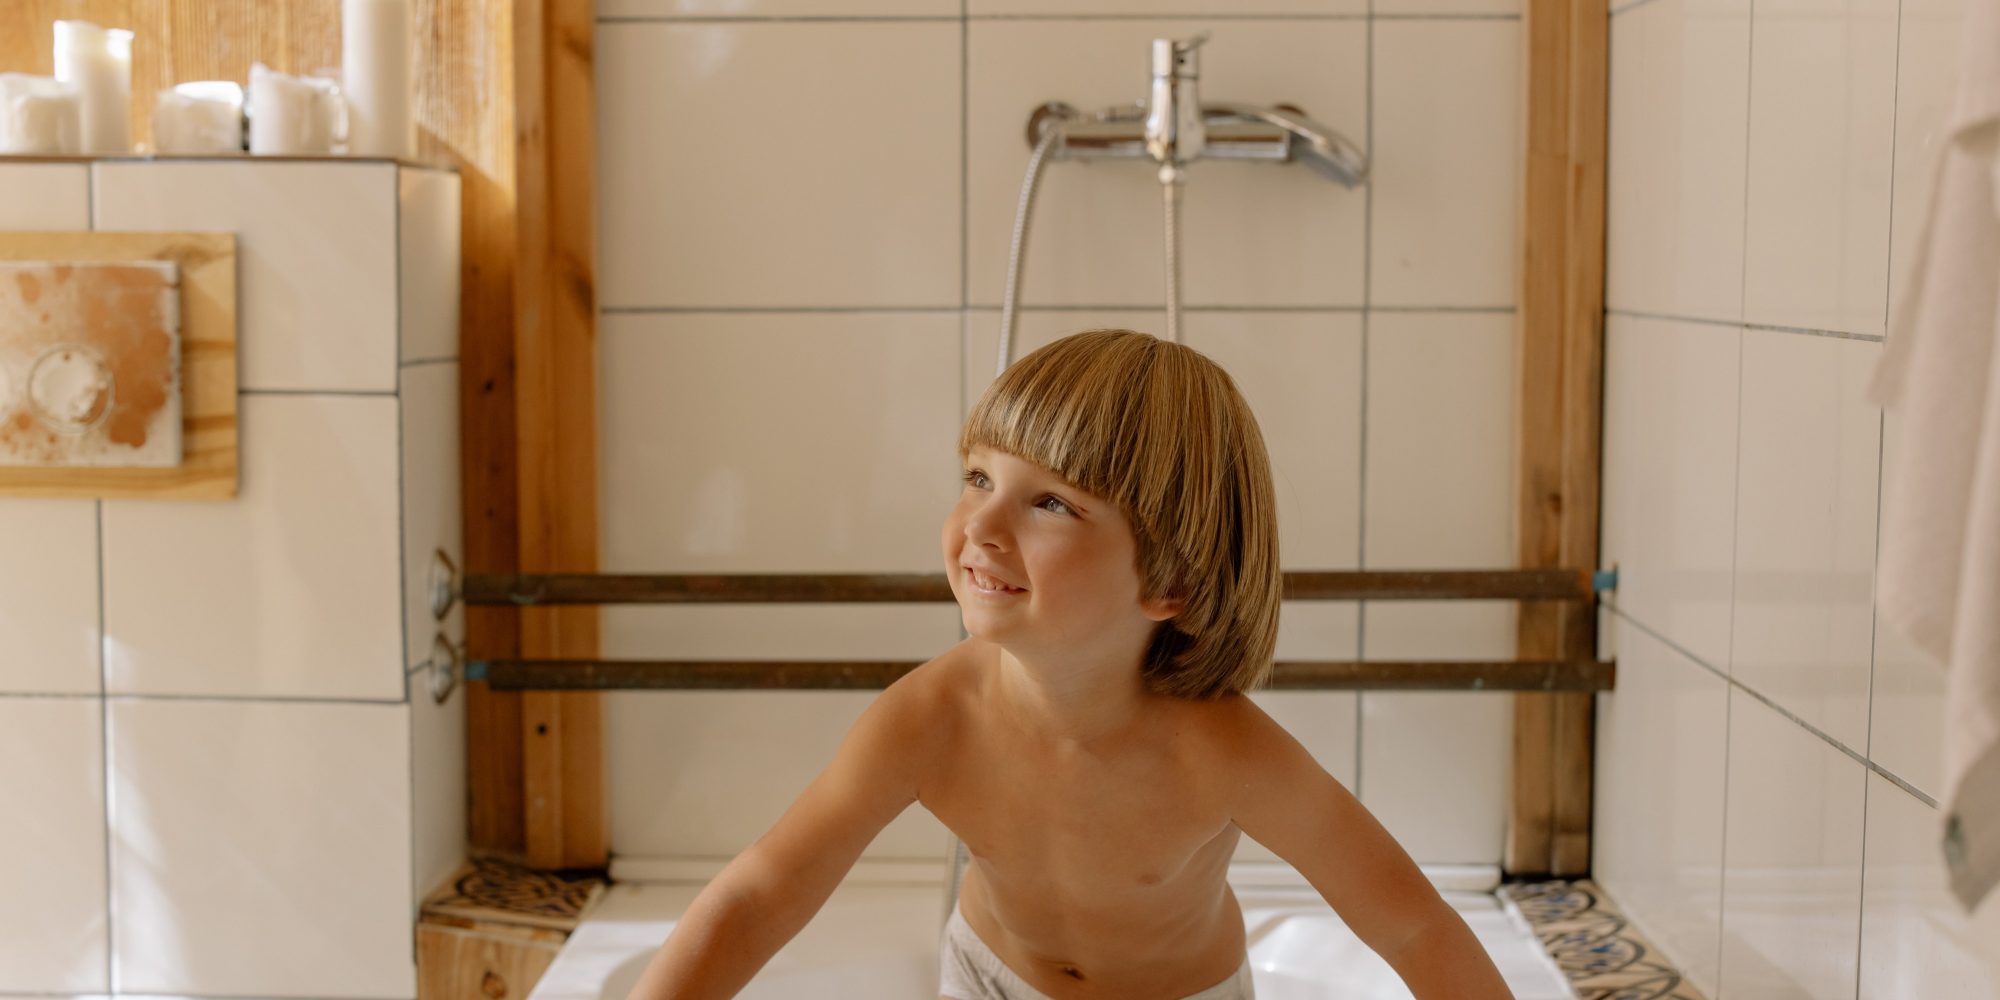 Πώς θα μάθεις στο παιδί σου τα πάντα για την προσωπική του υγιεινή Μπάνιο, πλύσιμο χεριών, πλύσιμο δοντιών, και όλοι οι «κανόνες» που πρέπει να ακολουθεί κάθε άτομο.